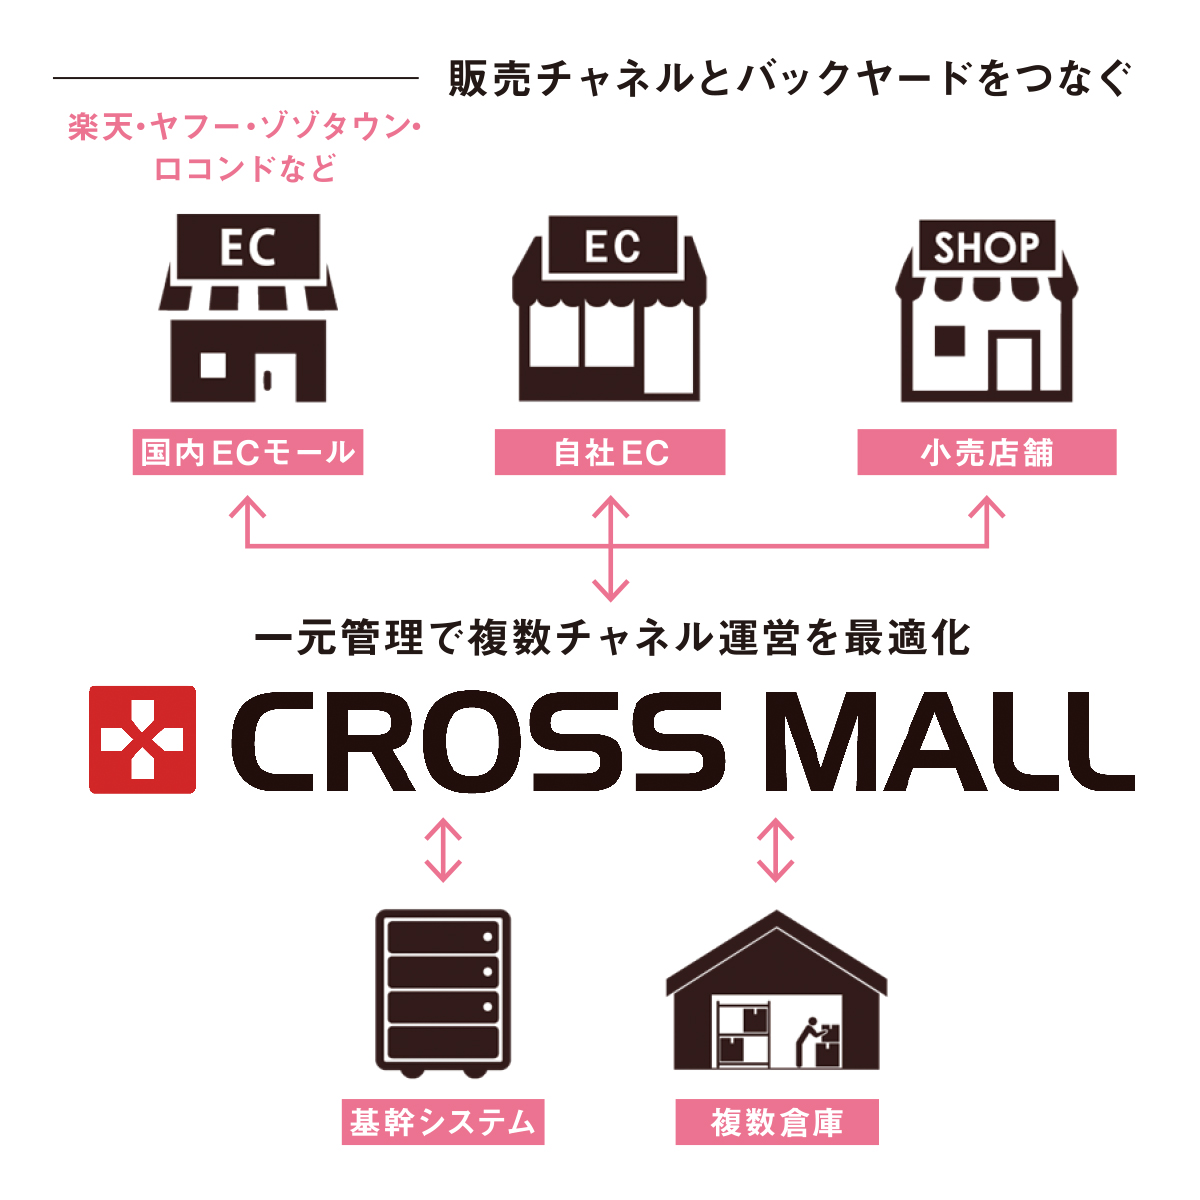 アトモス」が多店舗EC管理ツール「CROSS MALL」を選んだワケ （PR 